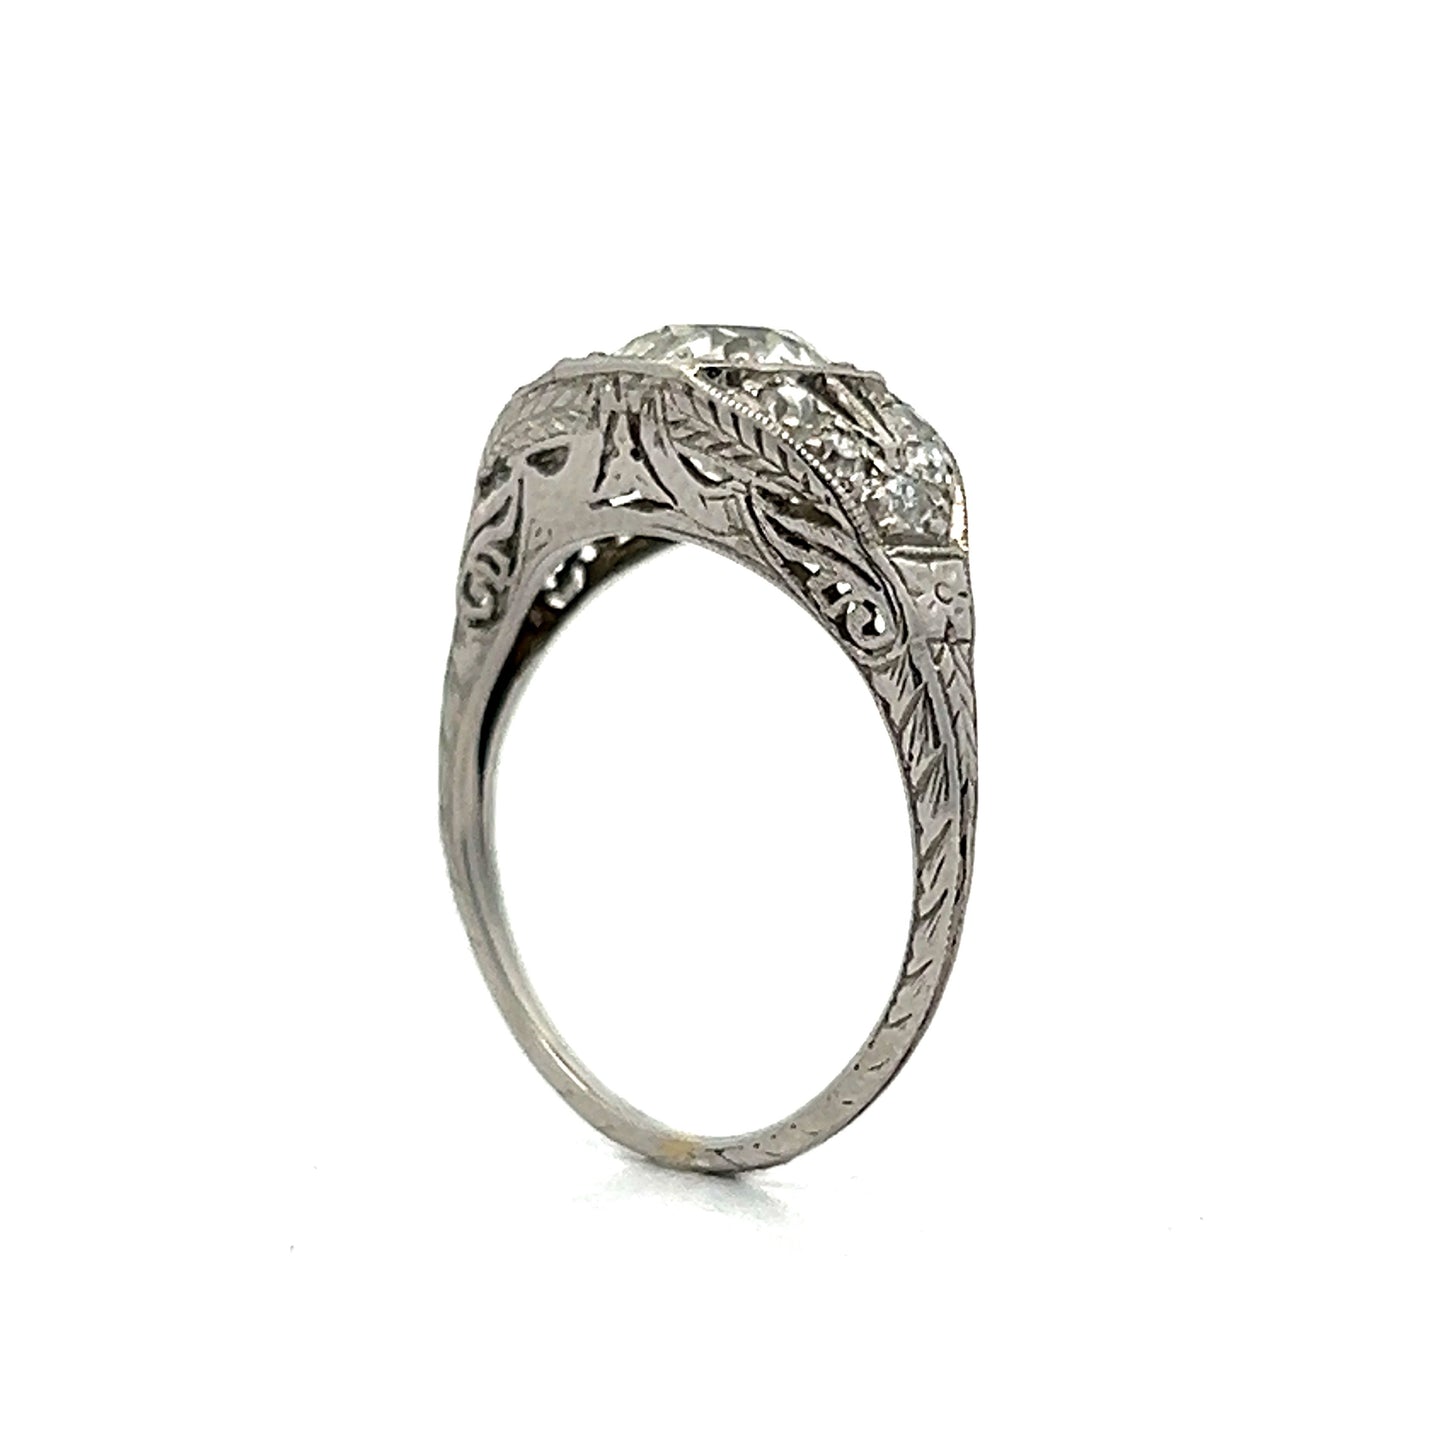 1.05 Art Deco Diamond Engagement Ring in Platinum